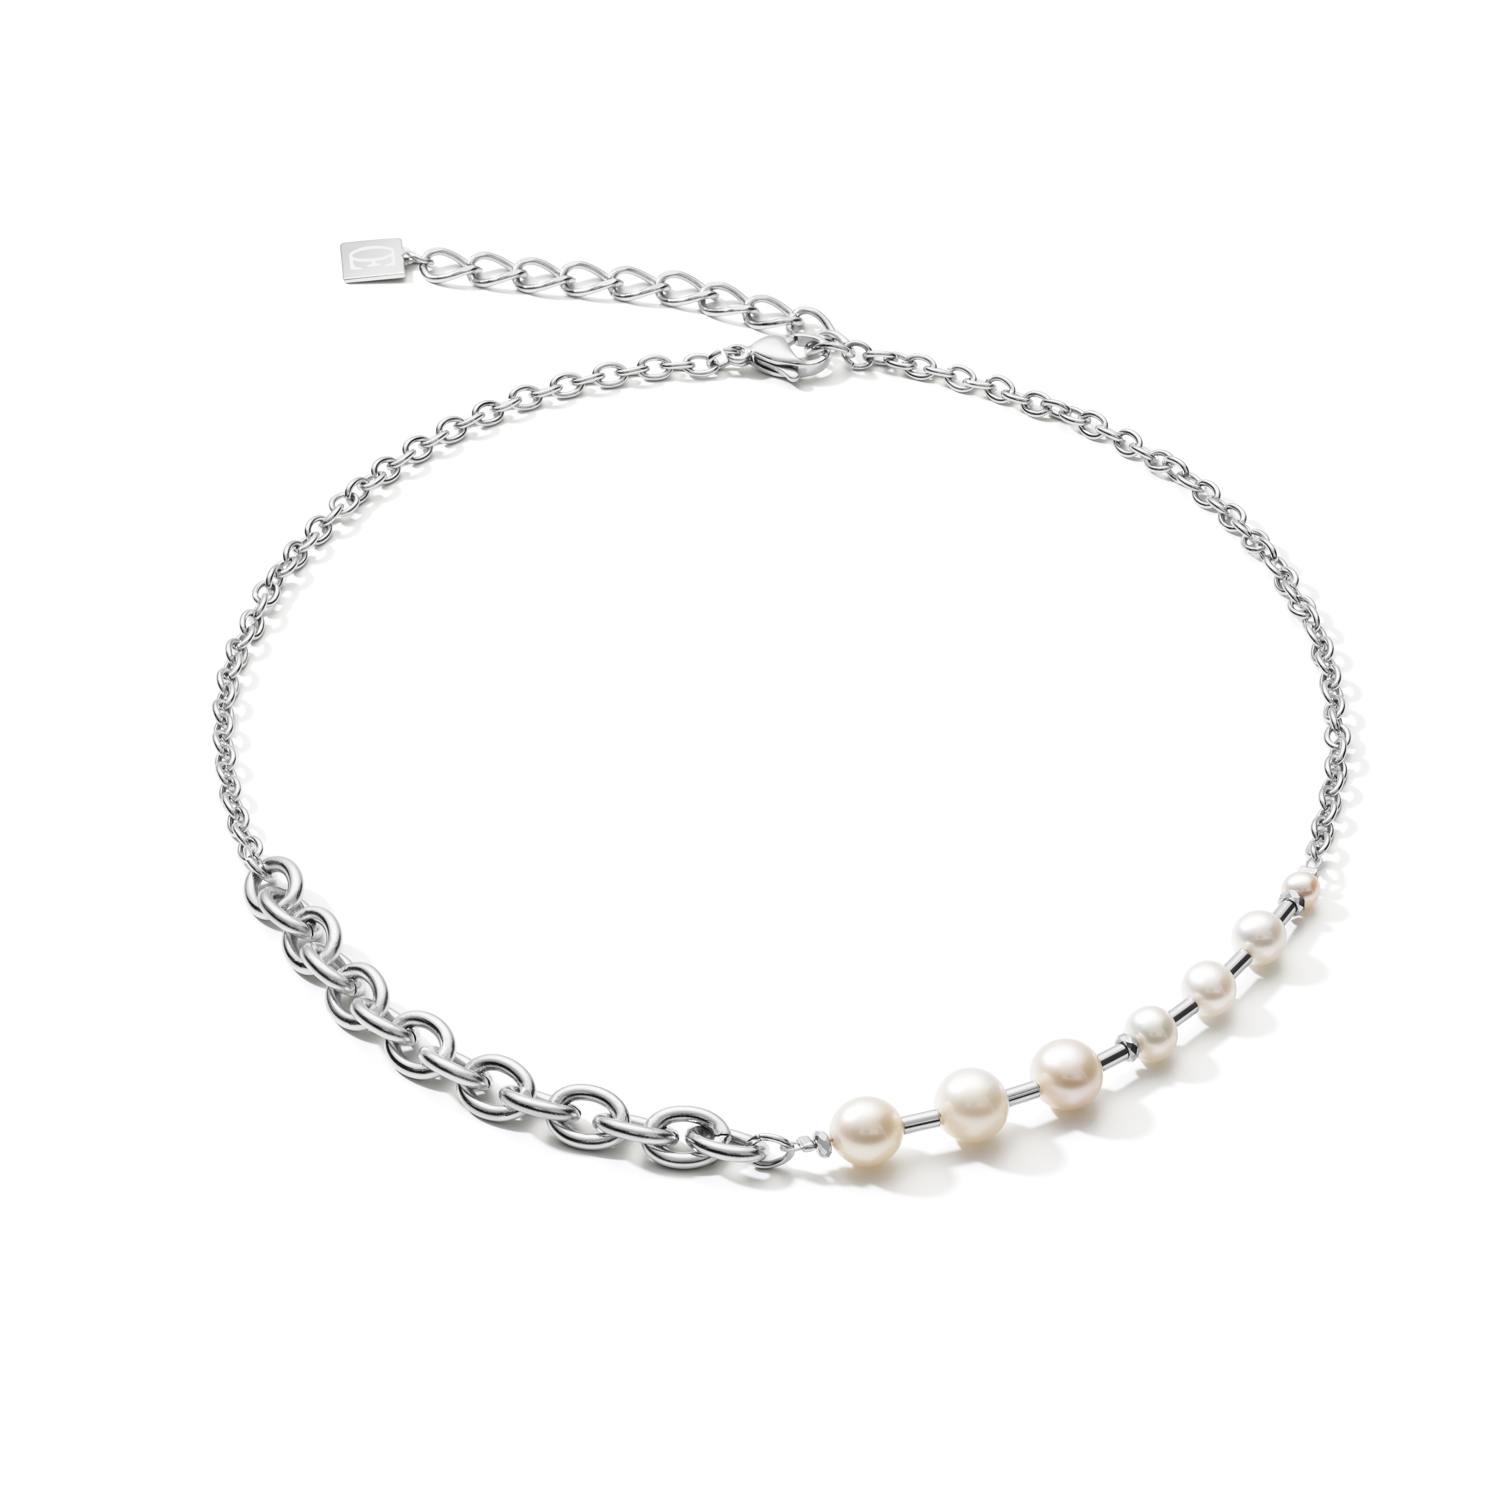 Halskette classic & modern Süßwasserperlen & Edelstahlkette weiß-silber